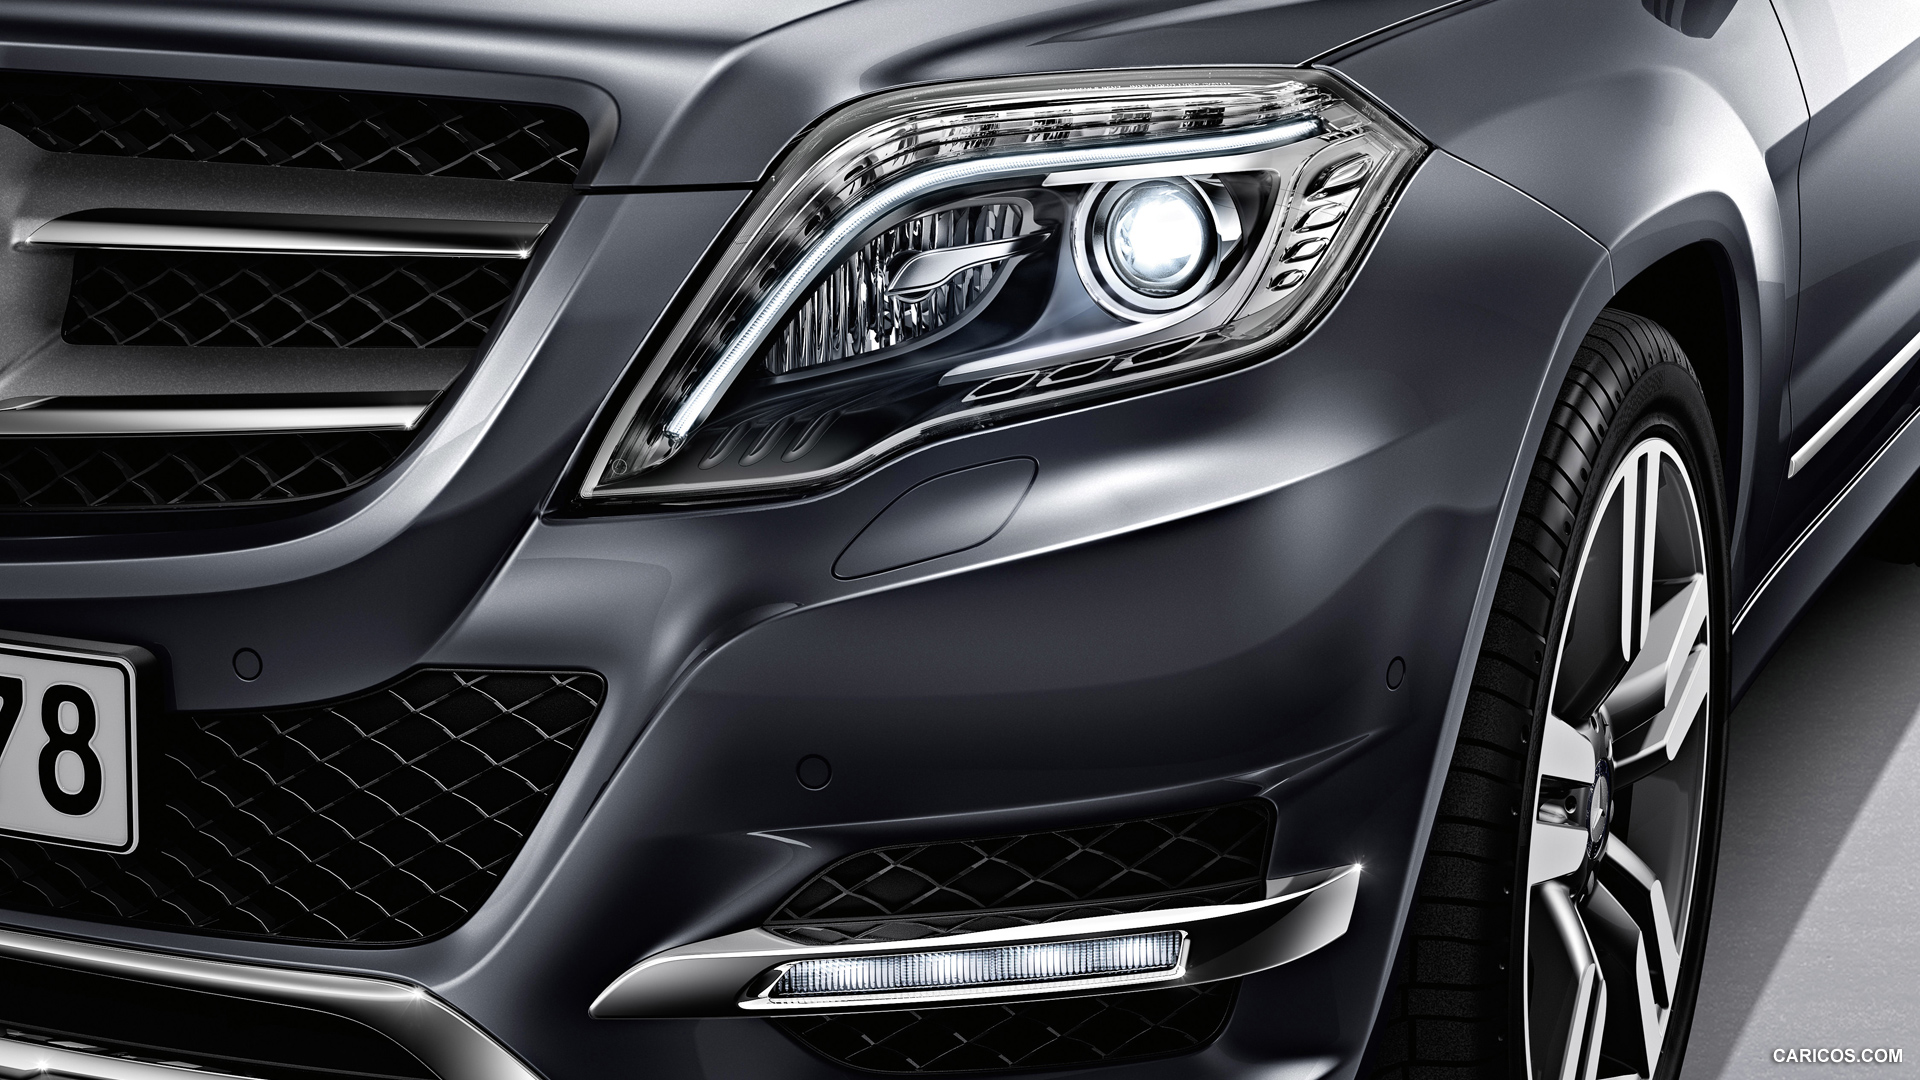 Mercedes-Benz GLK-Class (2013)  - Headlight, #40 of 109